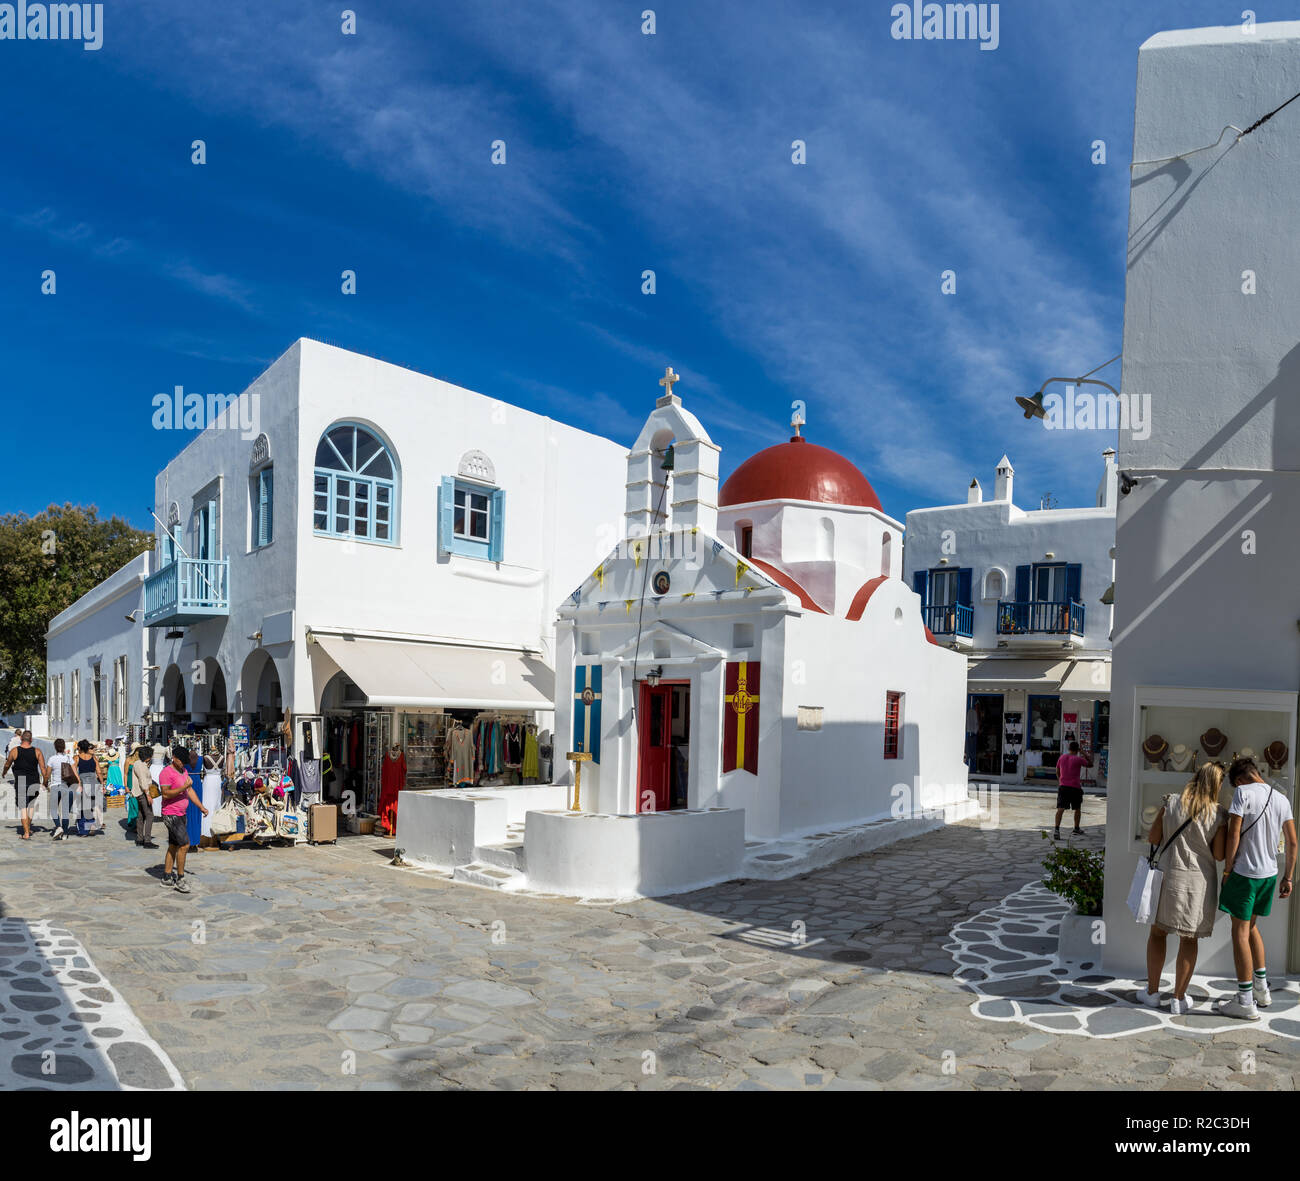 Eine kleine byzantinische Kirche in der griechischen Insel Mykonos. Traditionelle Ägäis Architektur. Stockfoto